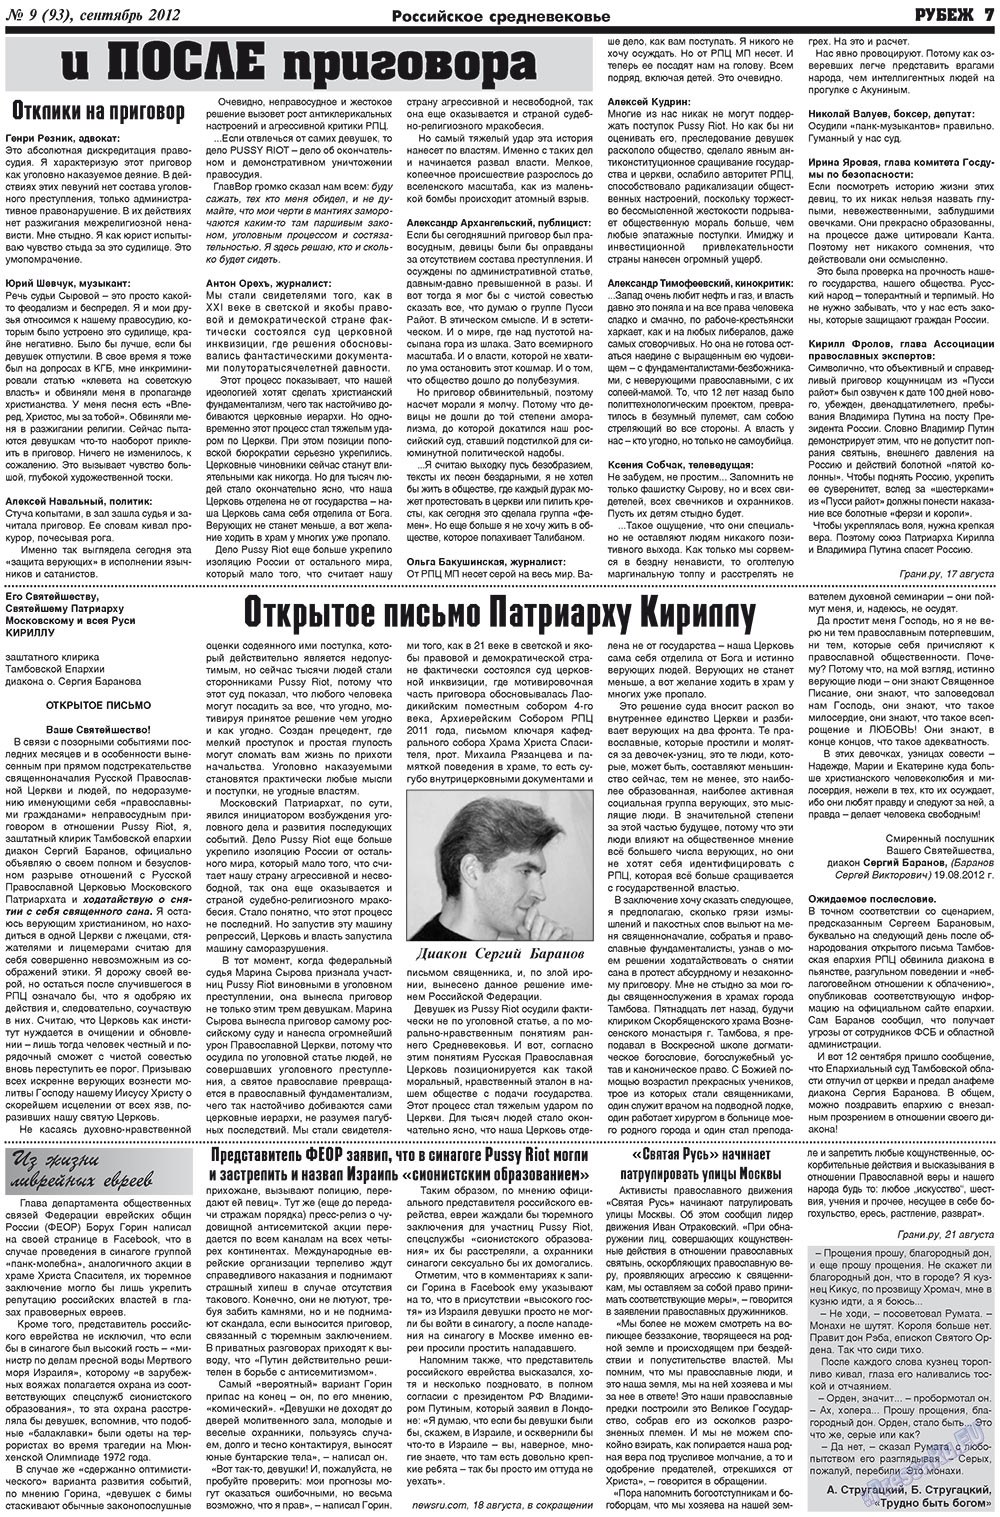 Рубеж (газета). 2012 год, номер 9, стр. 7